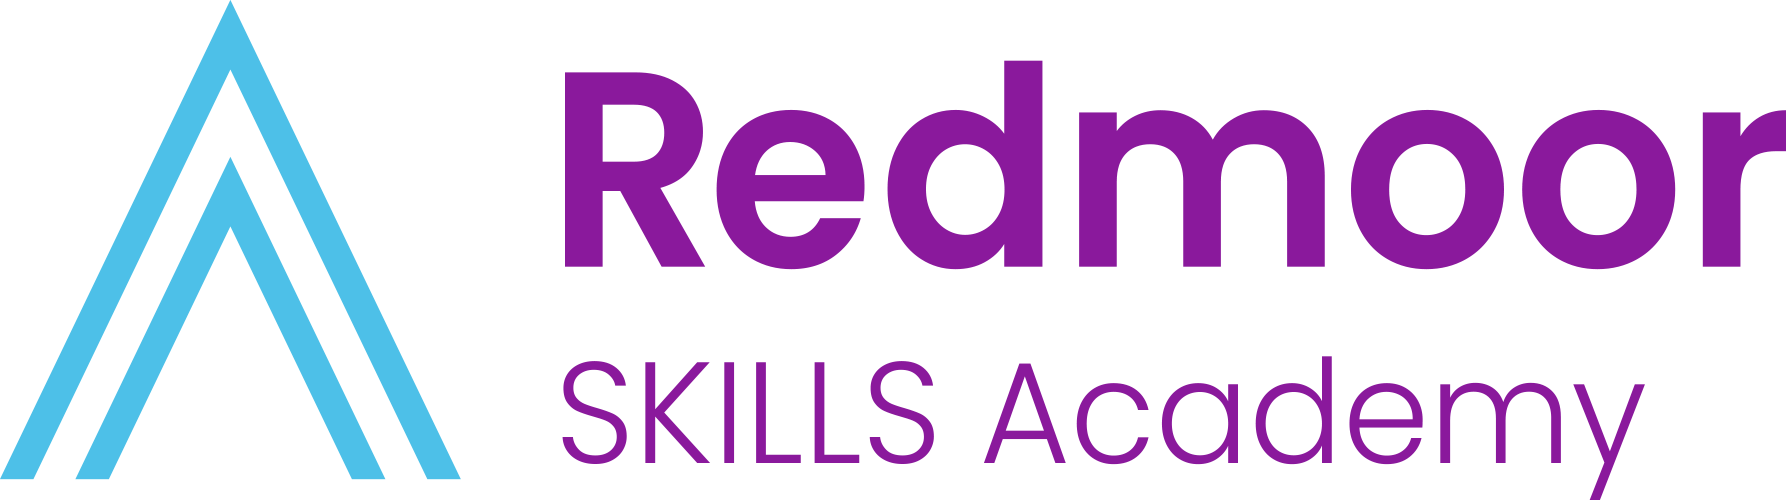 Redmoor Skills Academy